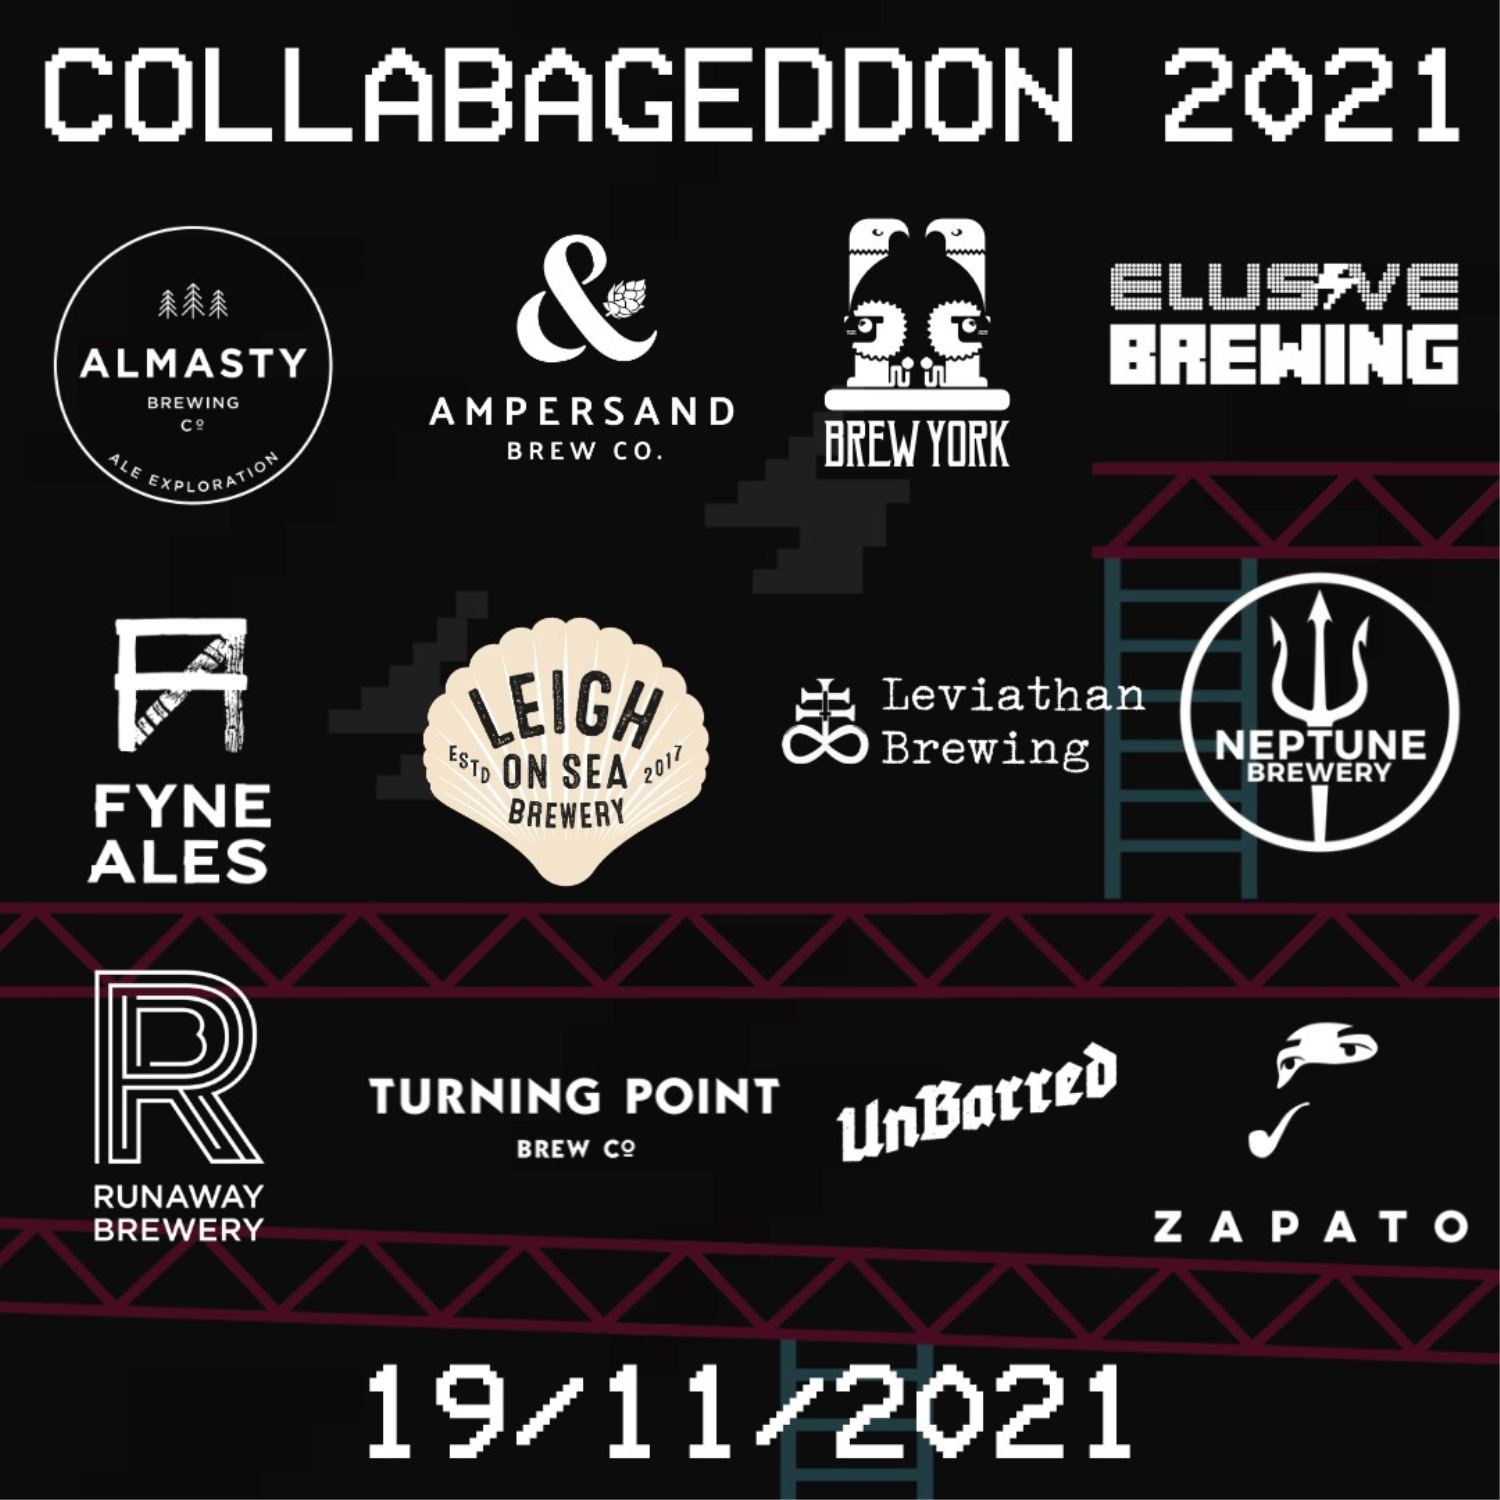 Collabageddon 2021